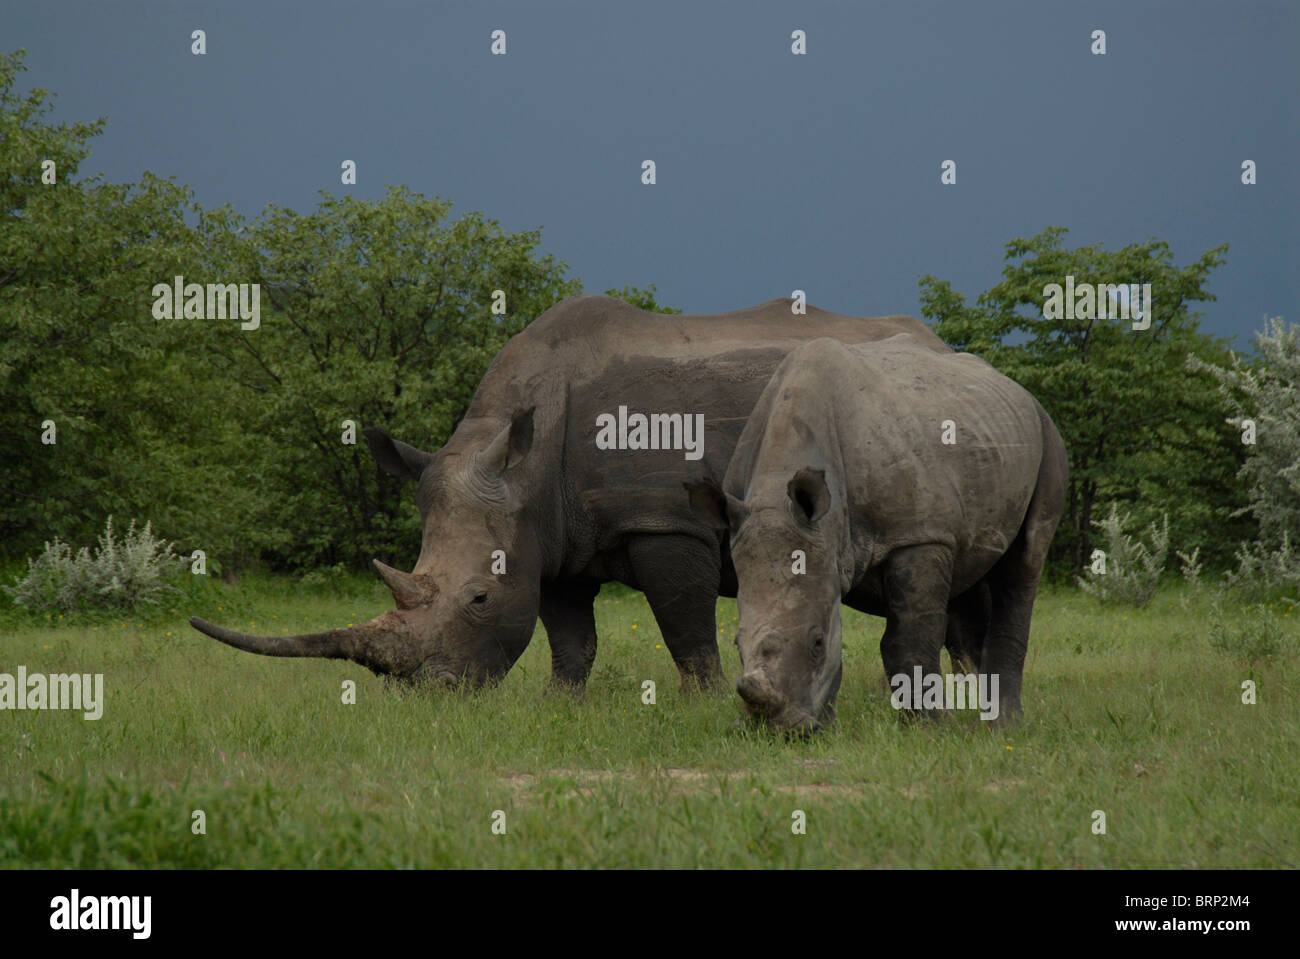 El rinoceronte blanco con cuerno largo de pastoreo y la pantorrilla. Foto de stock